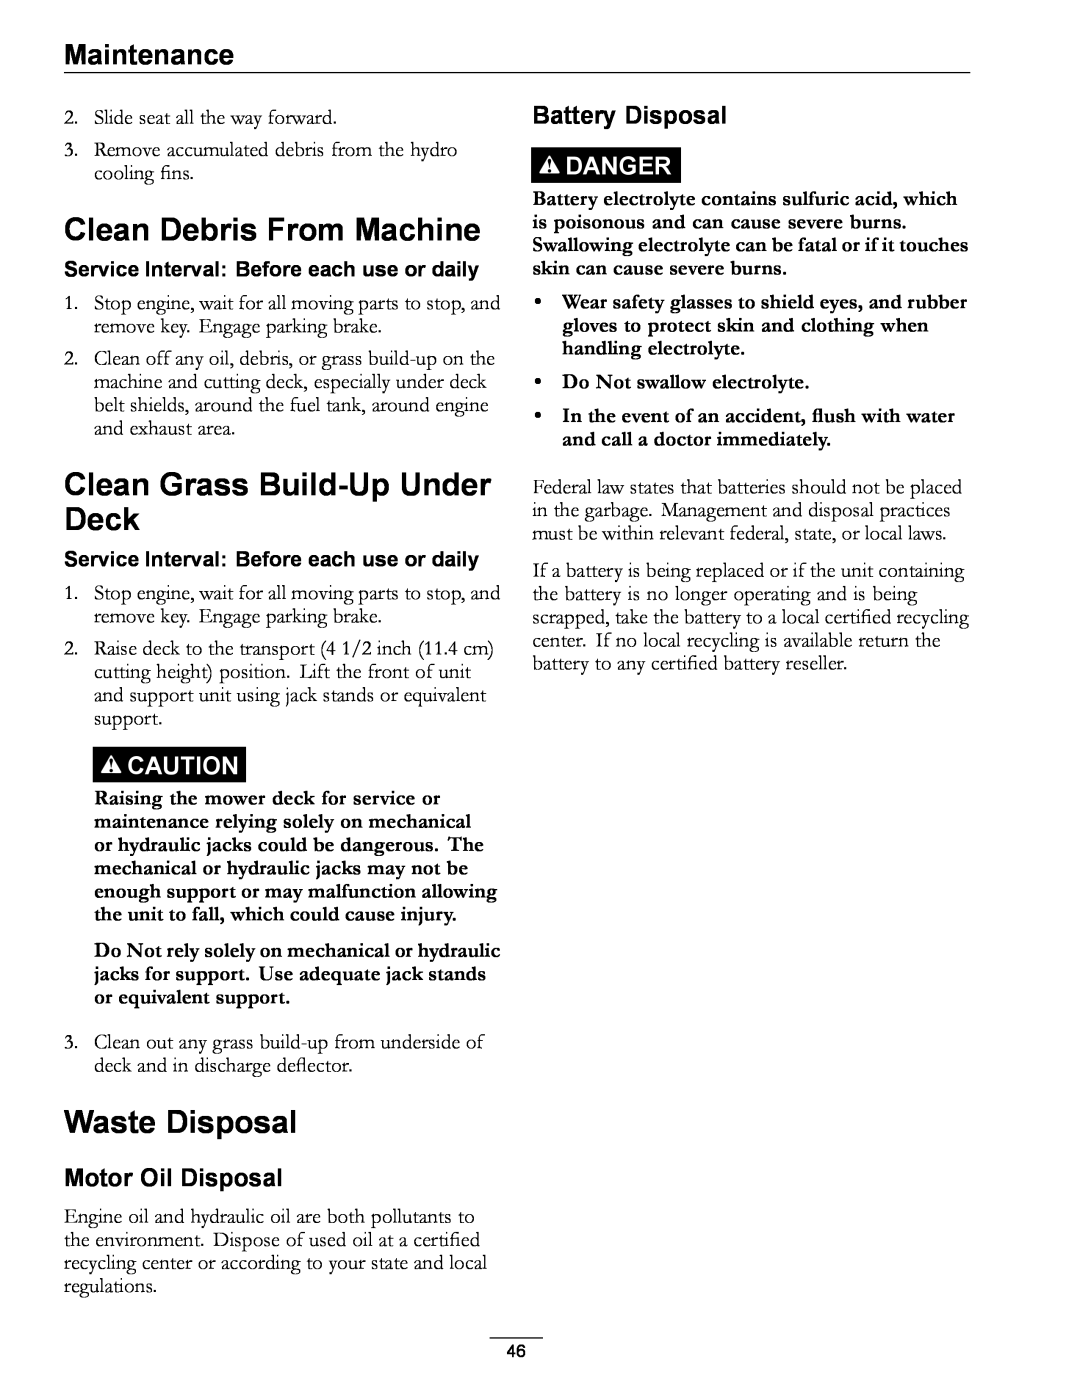 Exmark 4500-872 Clean Debris From Machine, Clean Grass Build-Up Under Deck, Waste Disposal, Motor Oil Disposal, Danger 